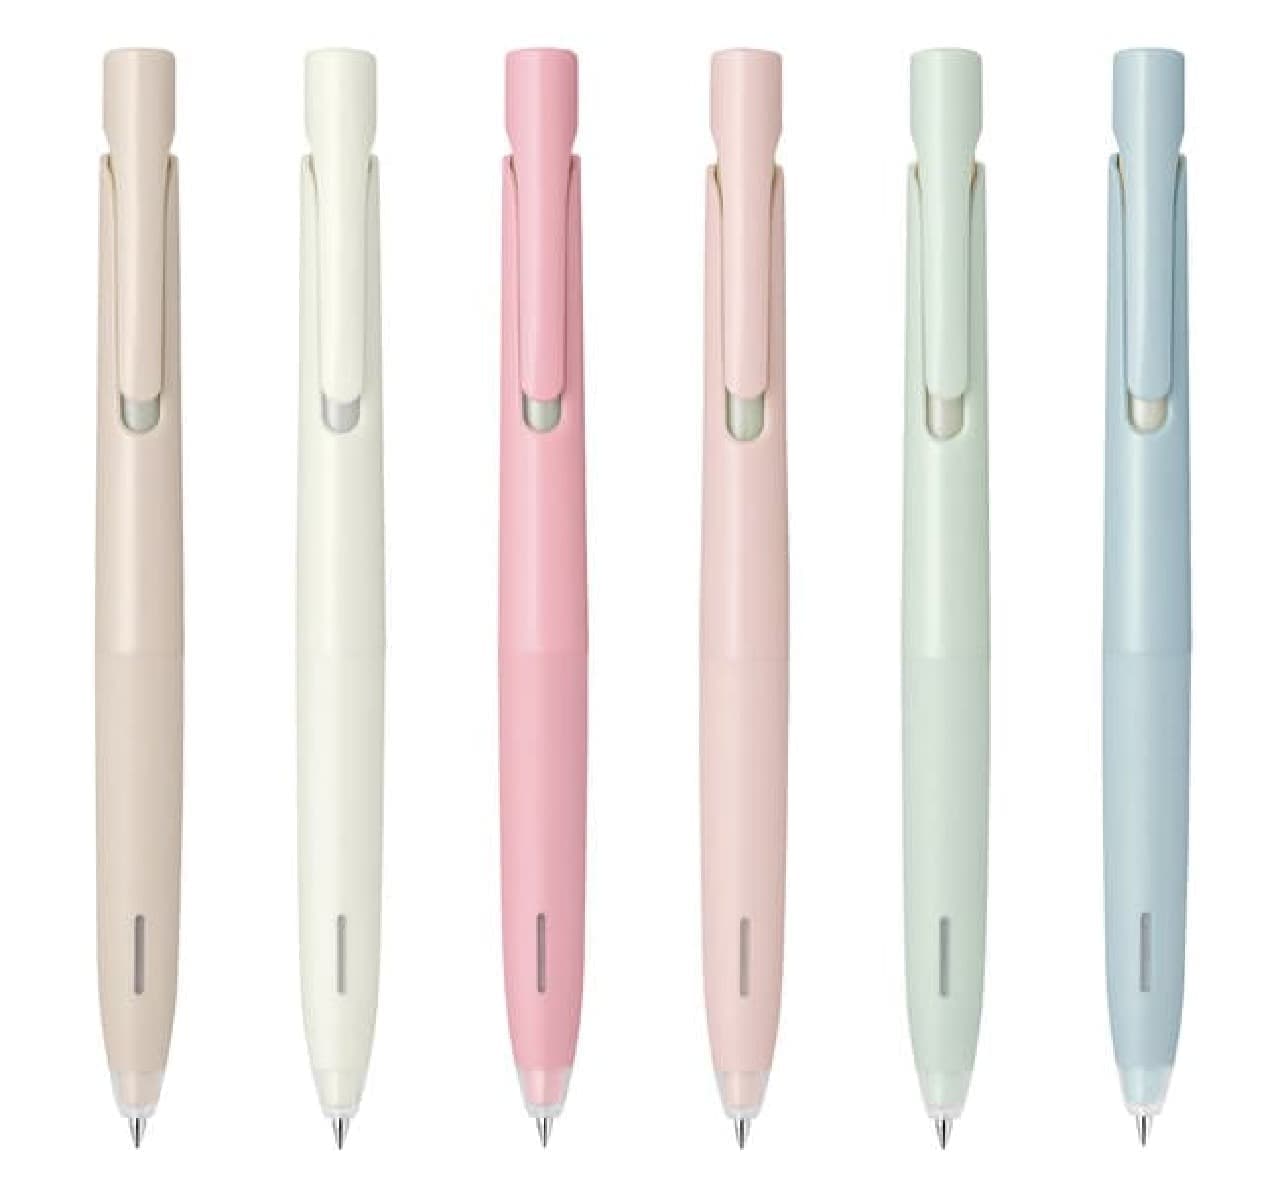 ブレないボールペン「ブレン」限定ボディカラー -- 春らしいローズピンク・ミストグリーンなど6種